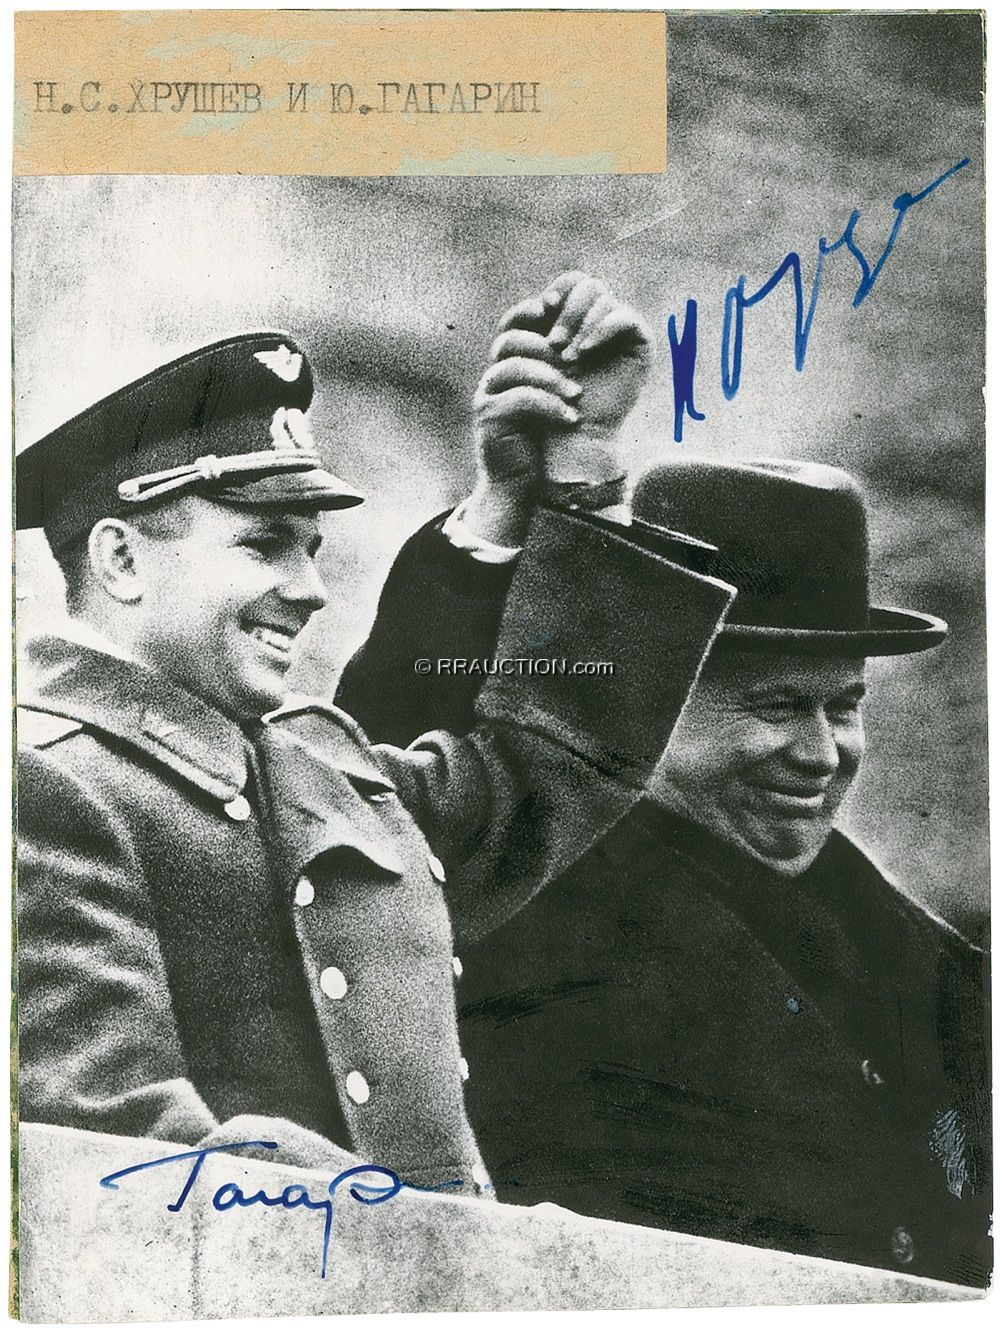 Lot #320 Nikita Khrushchev and Yuri Gagarin